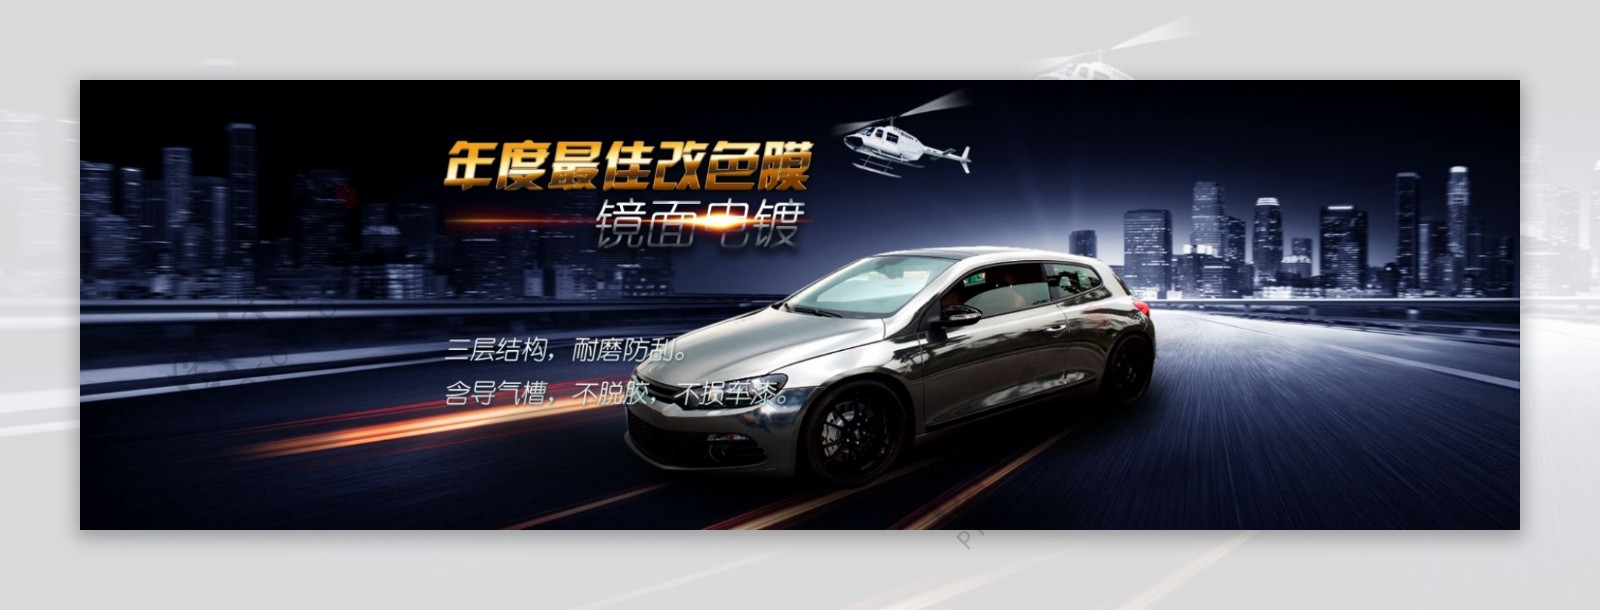 天猫高端产品汽车宣传海报图片